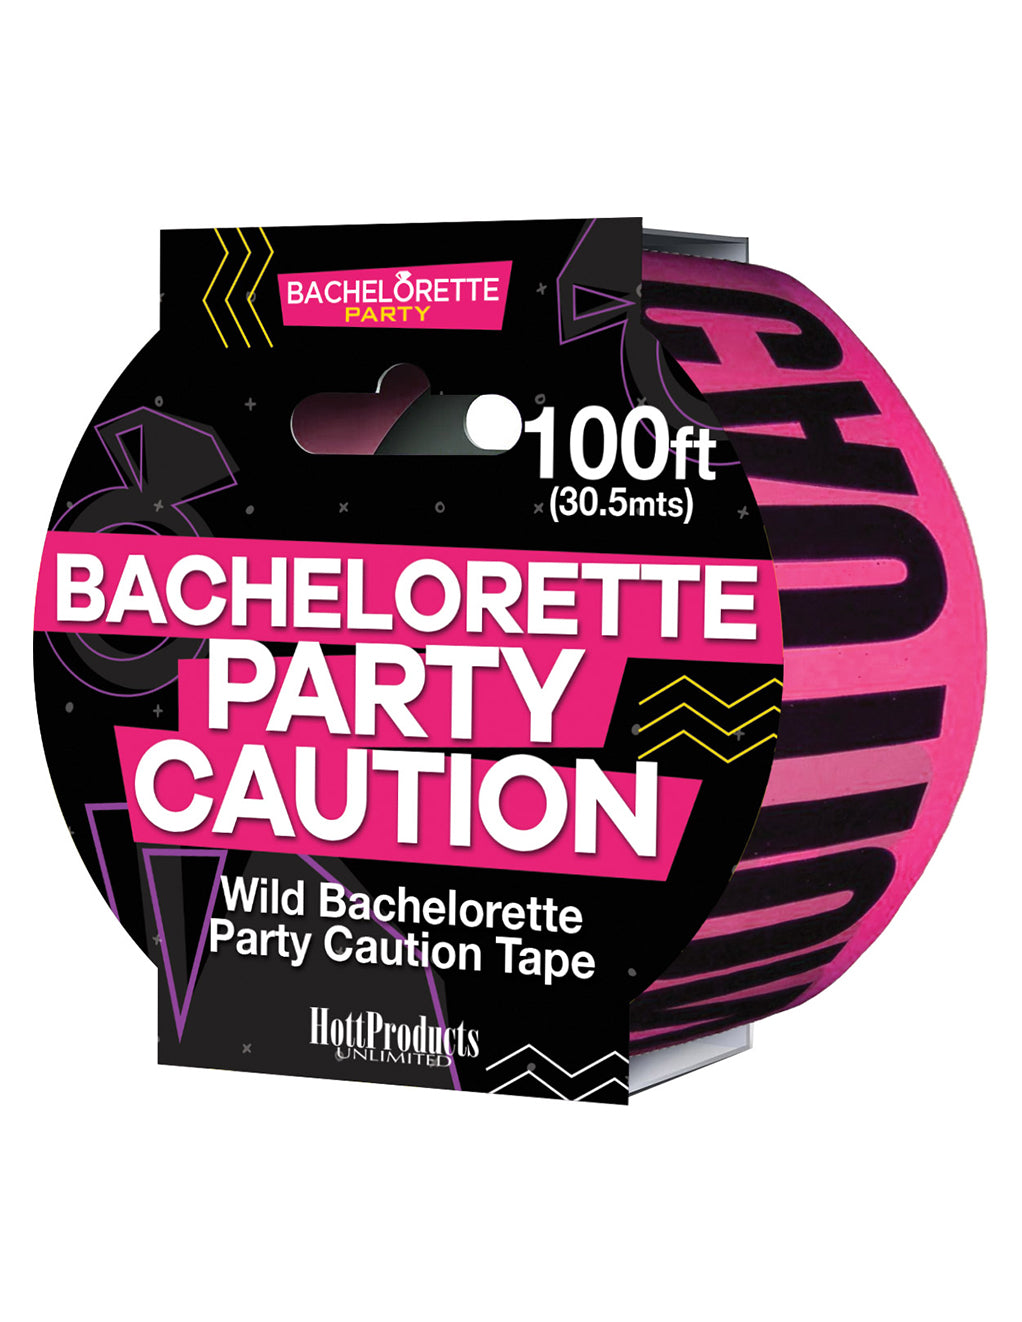 Bachelorette Party Caution Tape- front